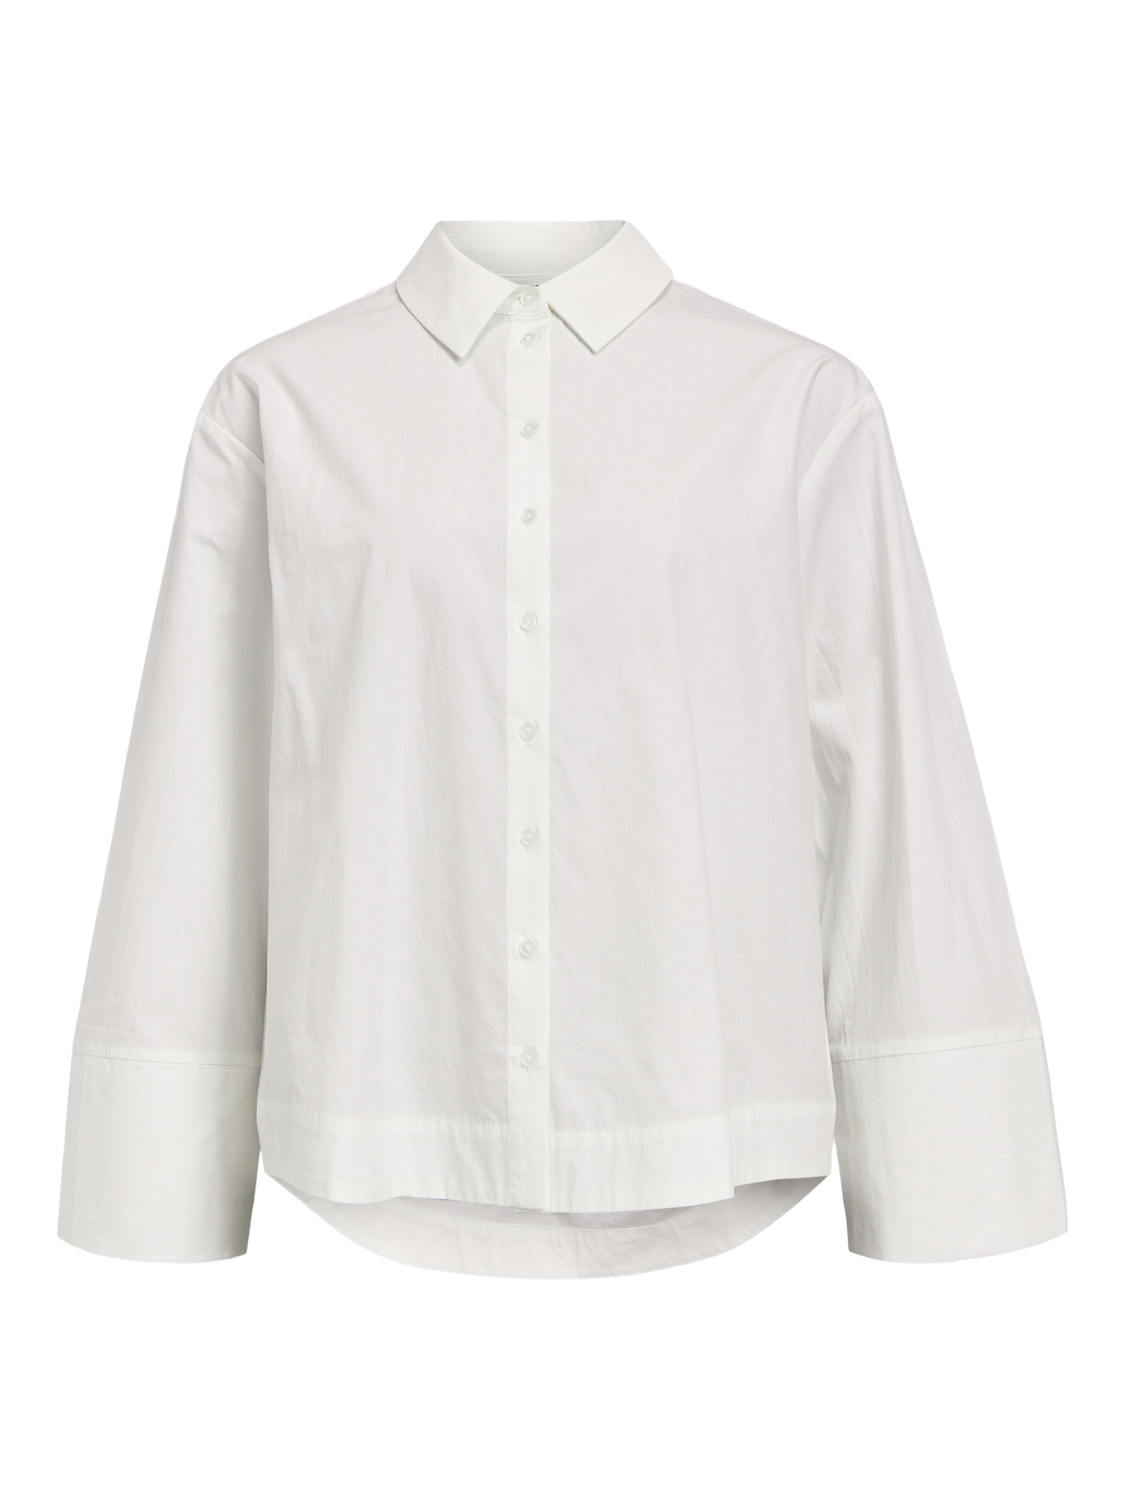 OBJKIRA Shirts - White